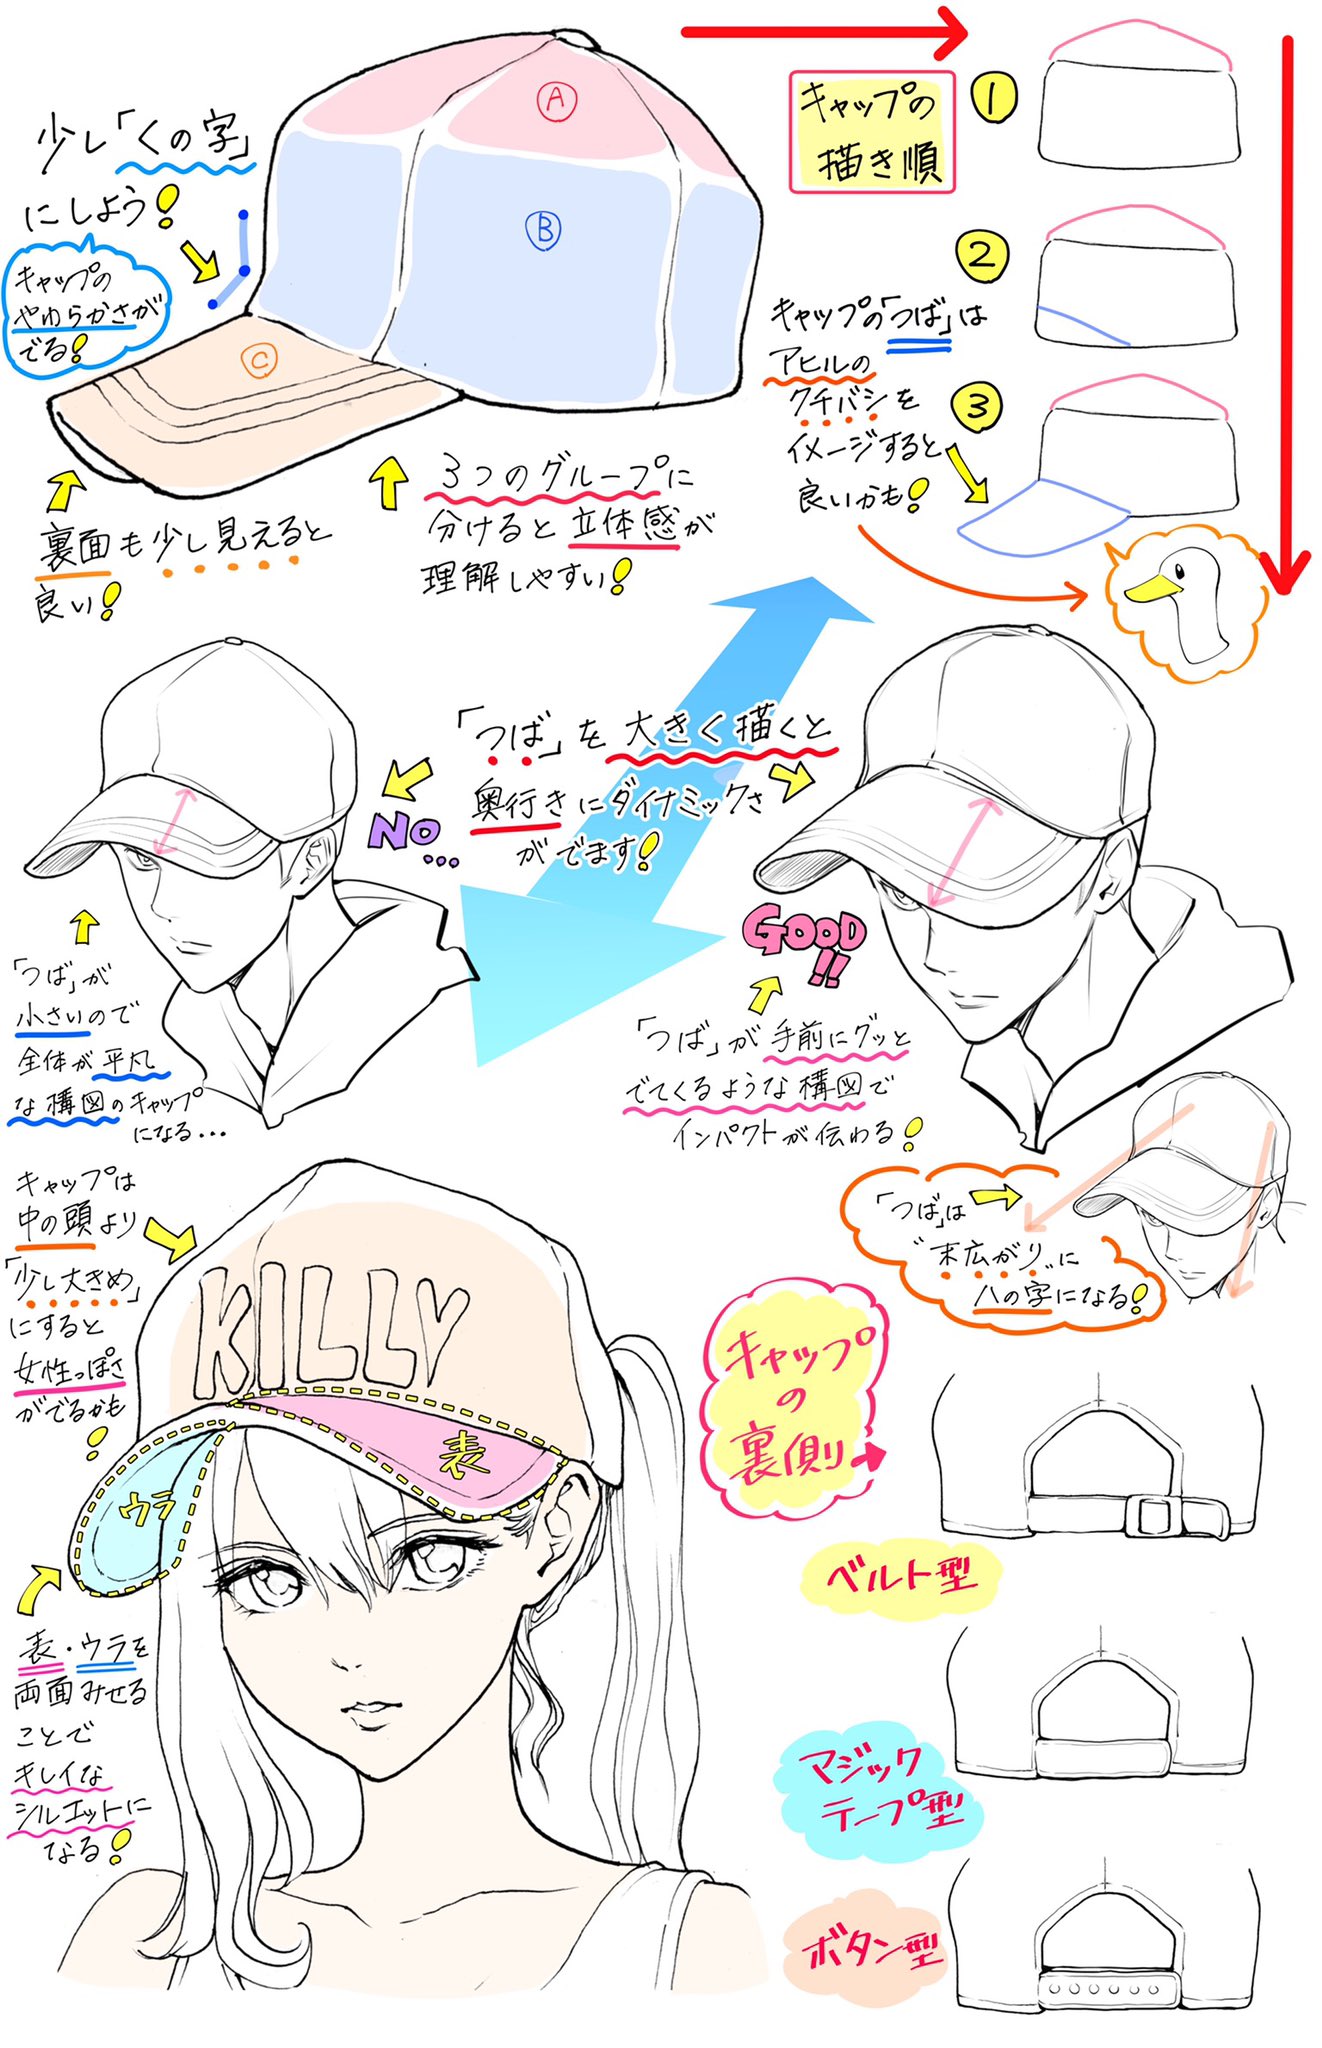 吉村拓也 イラスト講座 帽子 の描き方 頭の構図とキャップが上達するための ダメなこと と 良いこと T Co Fssqcbbdo5 Twitter